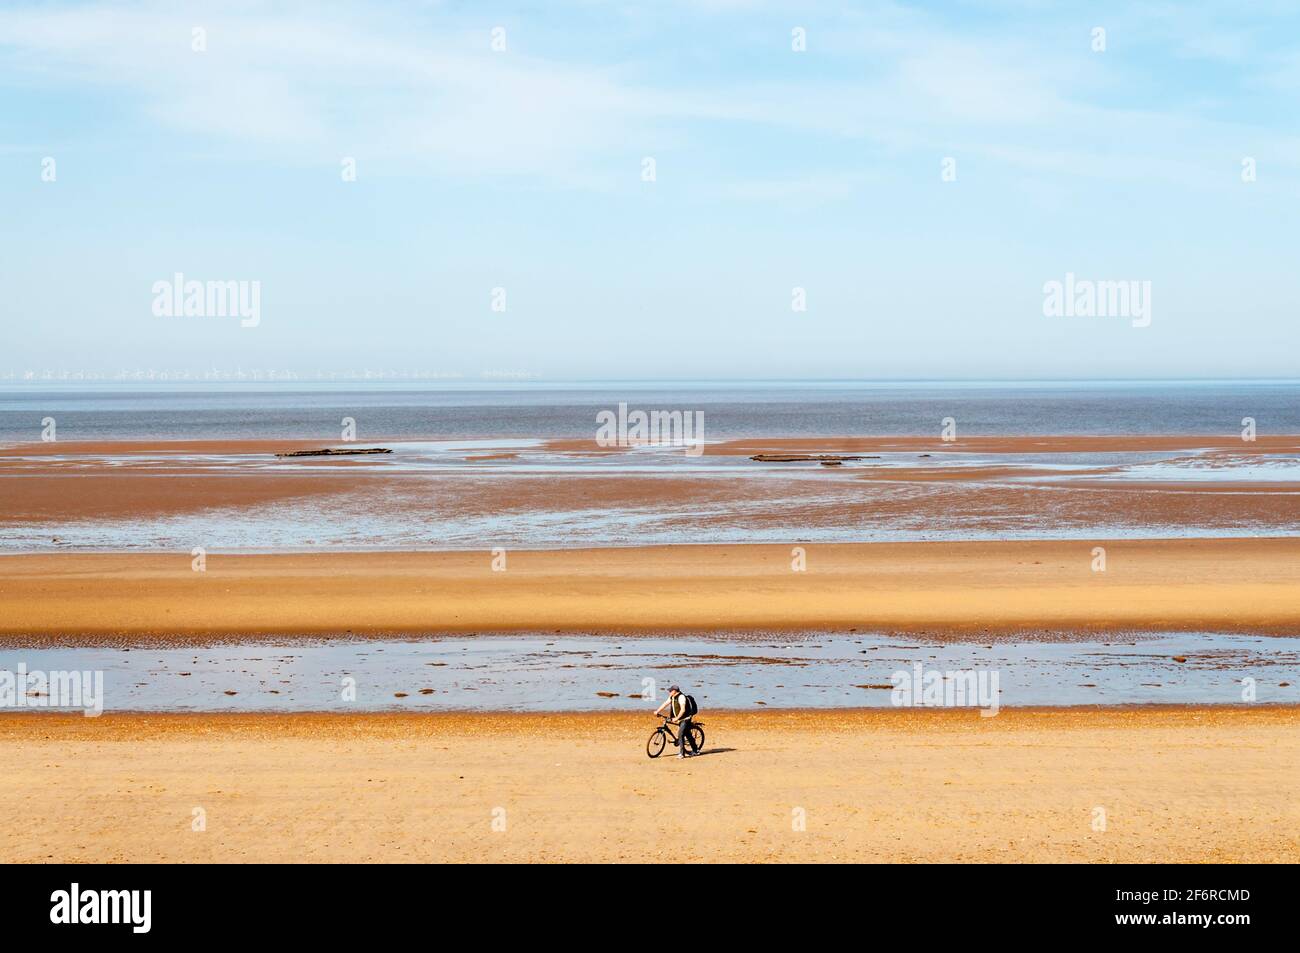 Un homme qui pousse un vélo le long d'une plage vide et déserte à Holme-Next-the-Sea sur la côte nord de Norfolk. Banque D'Images